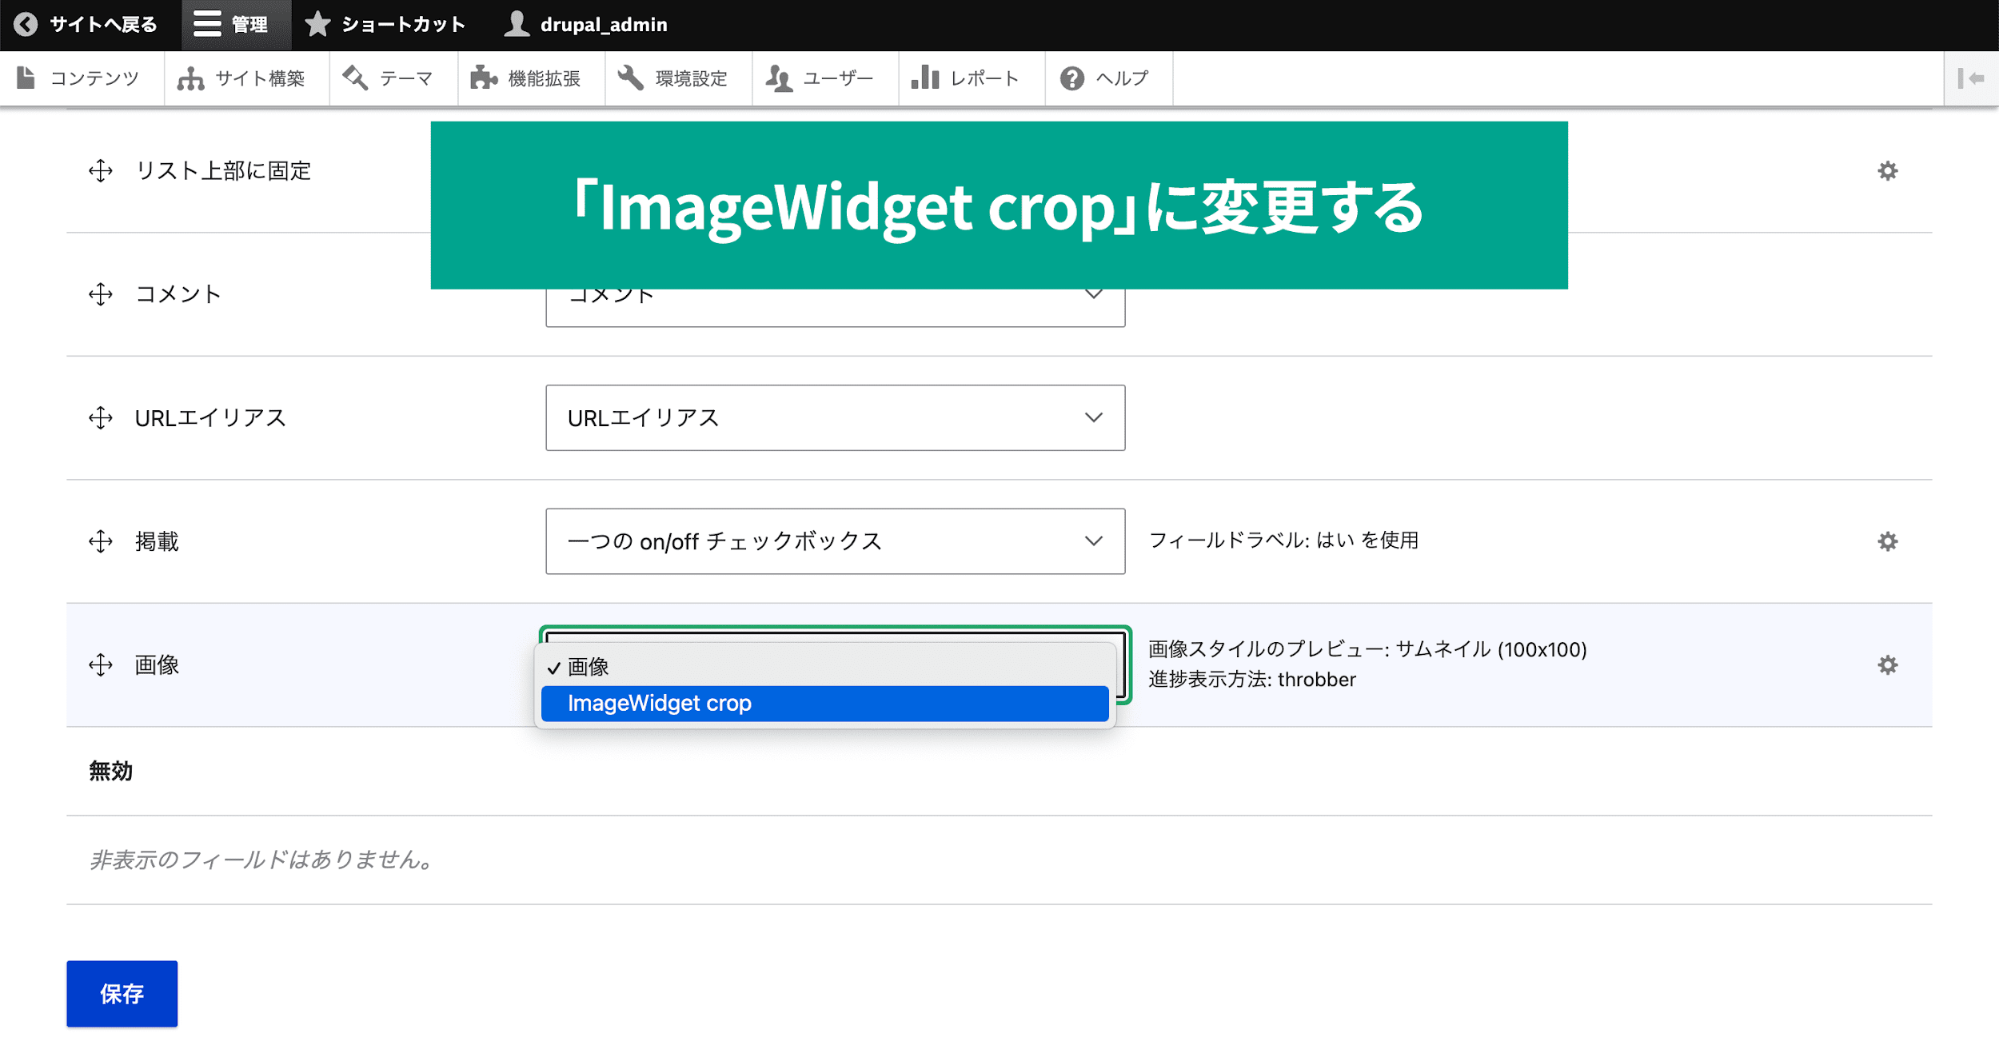 スクリーンショット「ImageWidget cropに変更する」